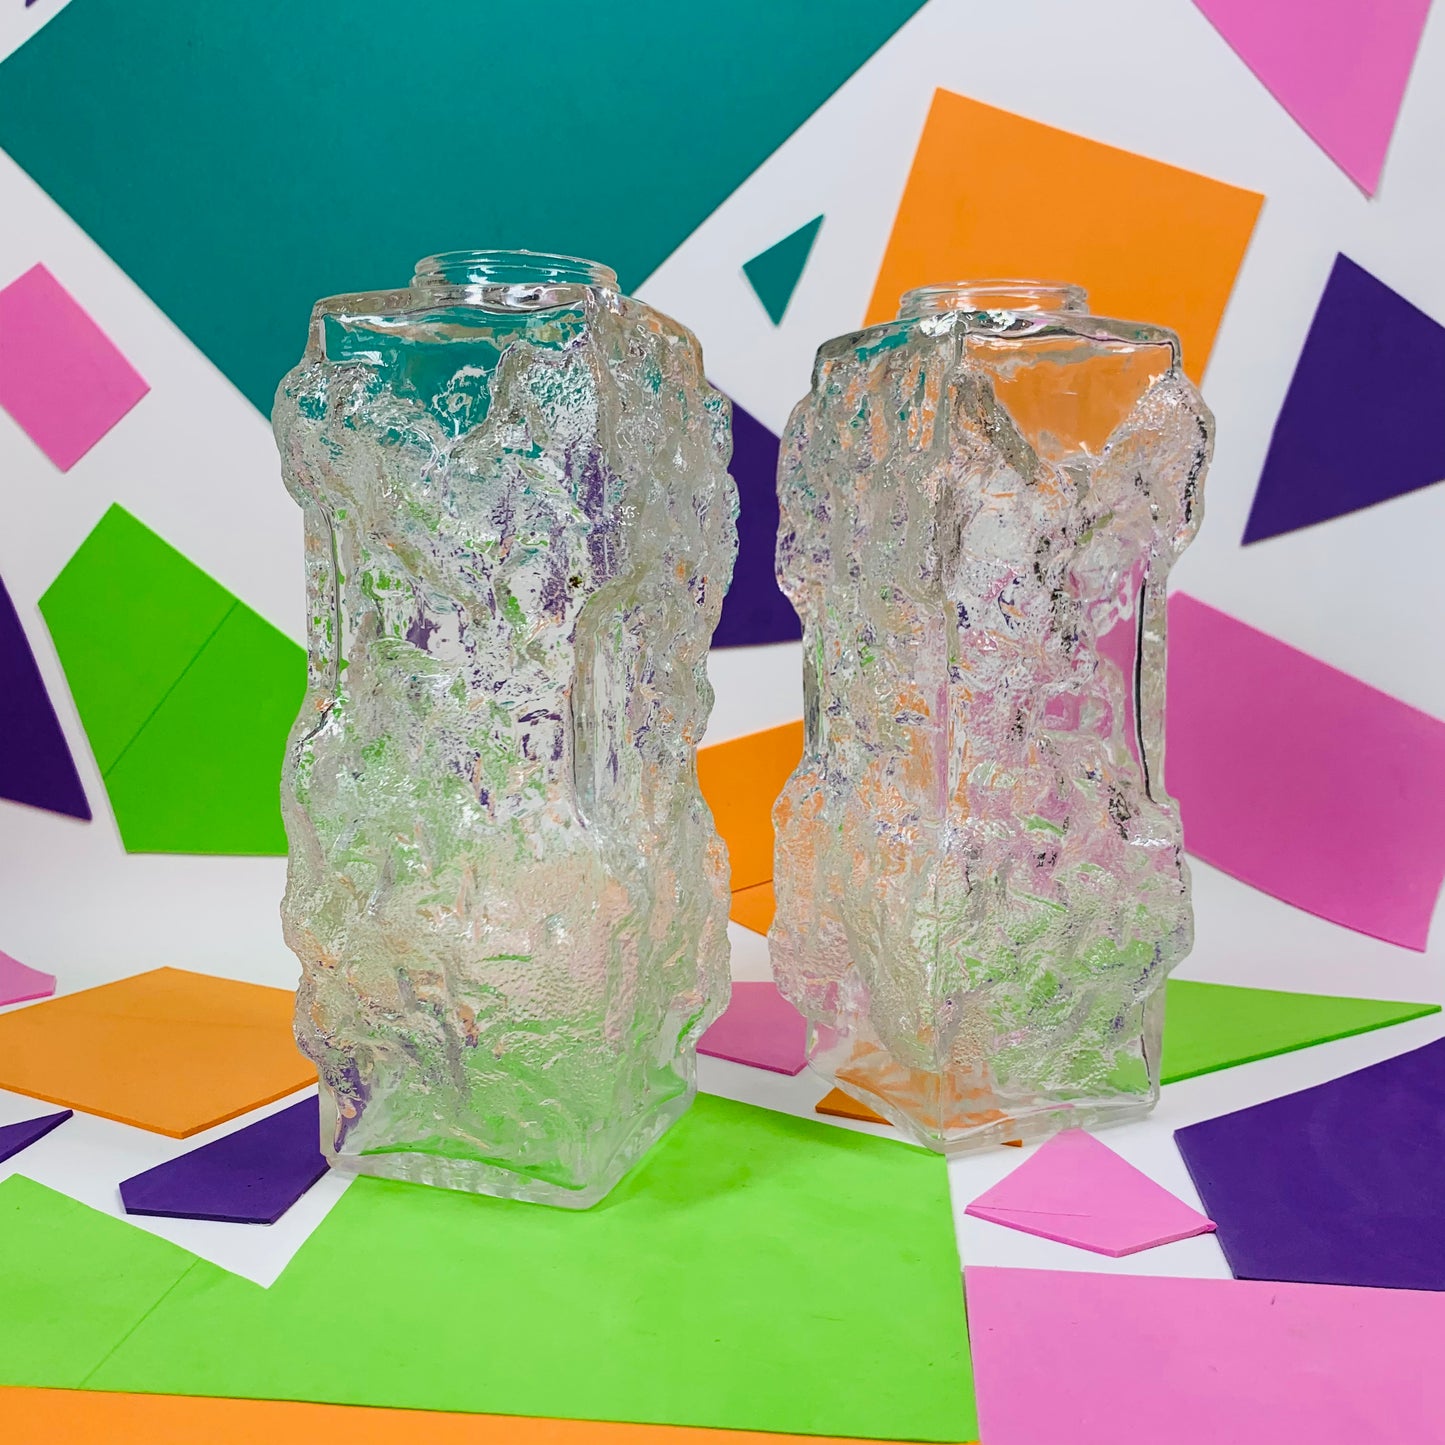 Extremely rare Midcentury Iittala glass vase